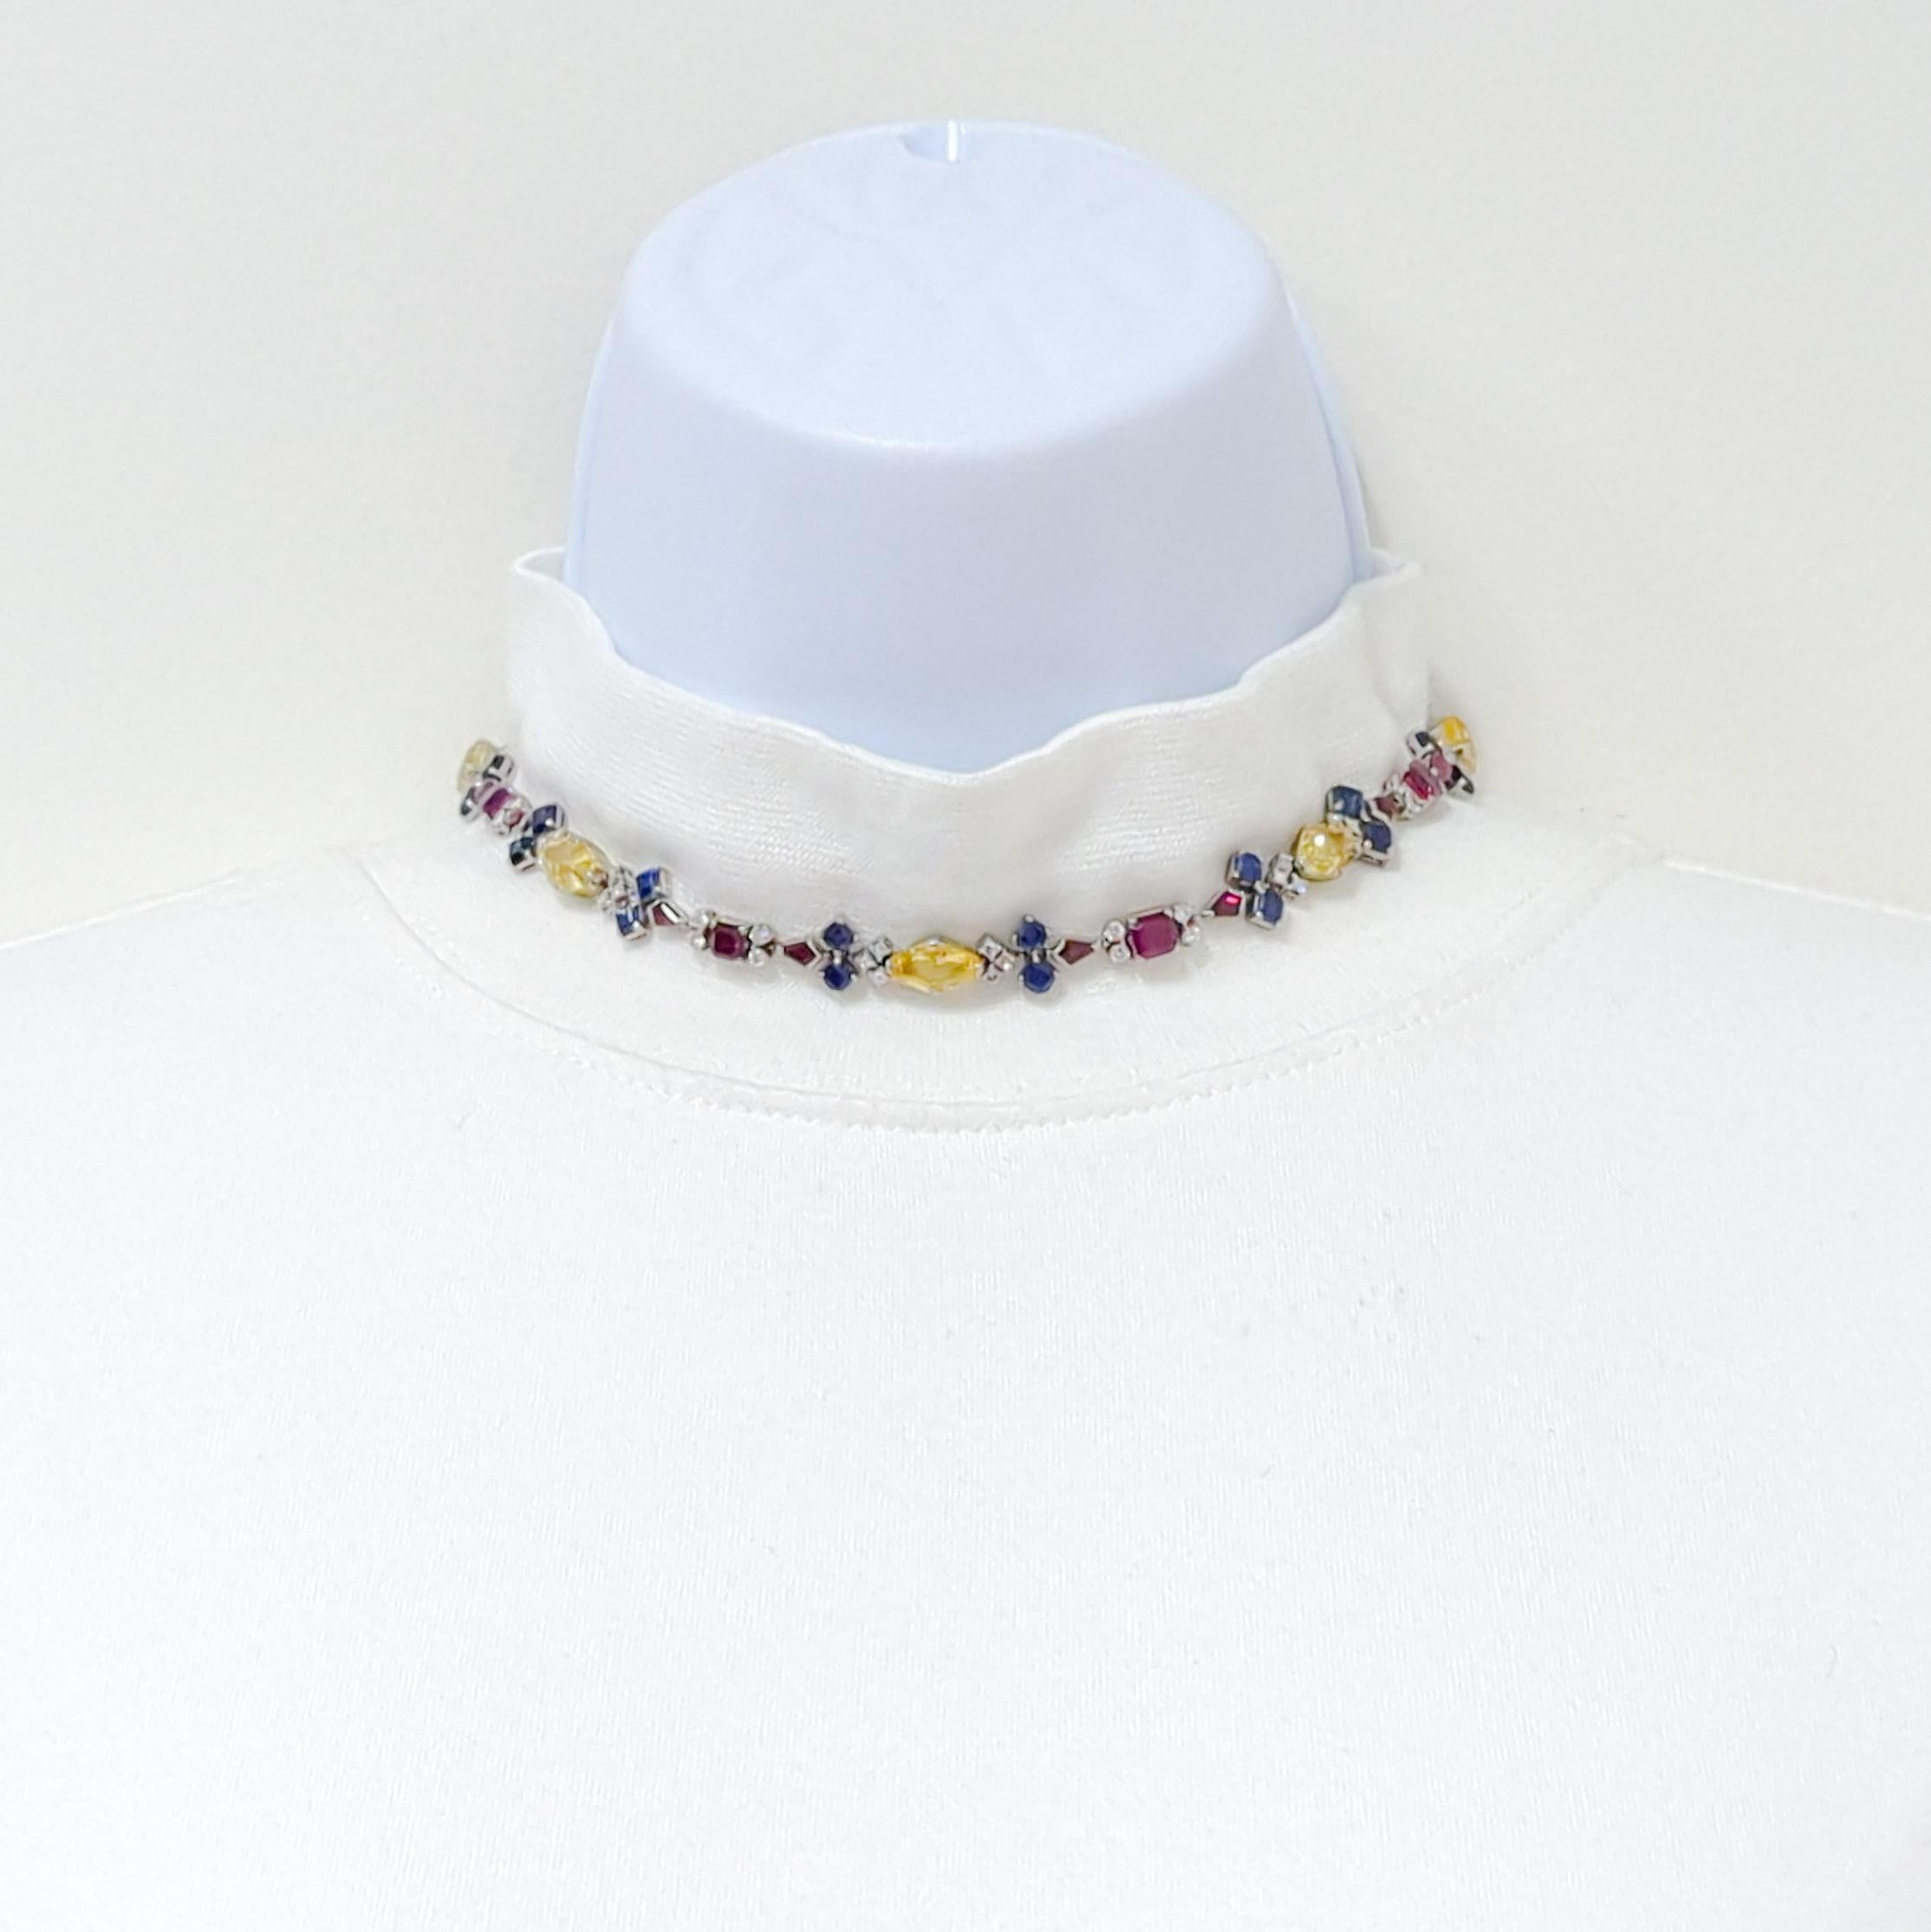 Magnifique collier en saphir multicolore, rubis et diamant blanc fait à la main en platine et or blanc 14k.  Ce collier peut également être porté comme bracelet à double rangée.  Des boucles d'oreilles assorties sont disponibles.